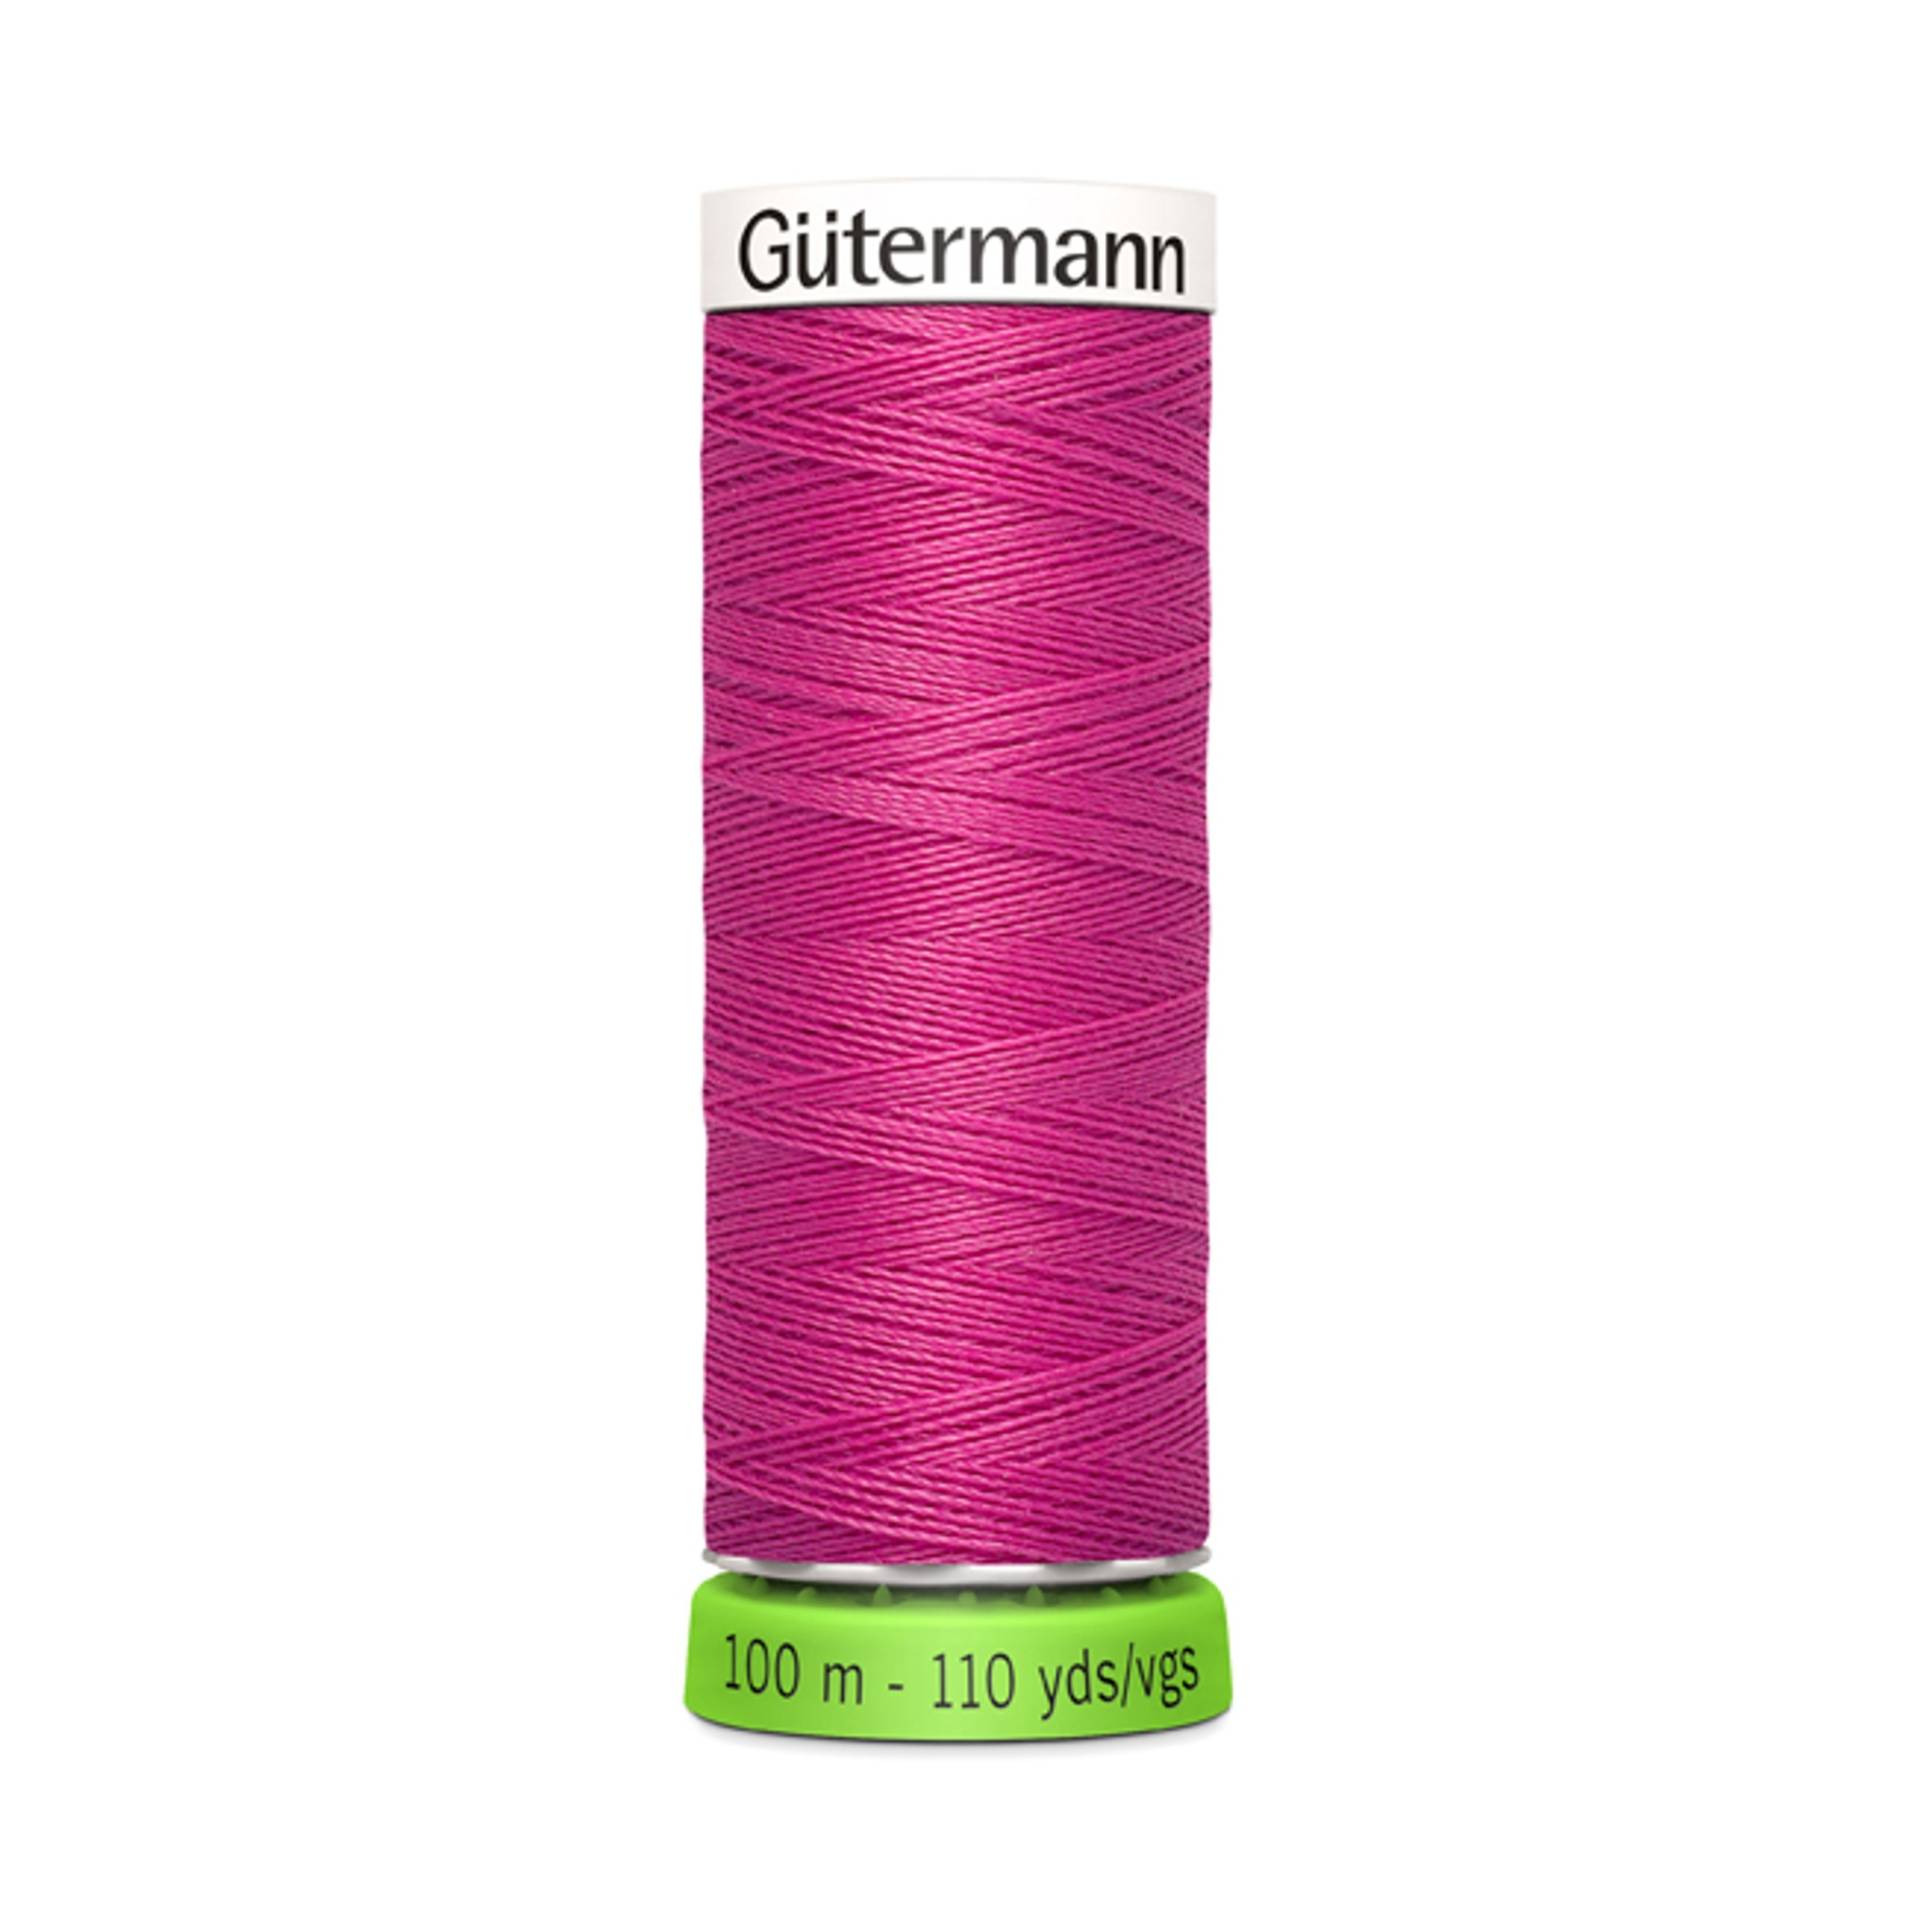 Gütermann Allesnäher rPET 100 m, (733) pink von Stoffe Hemmers